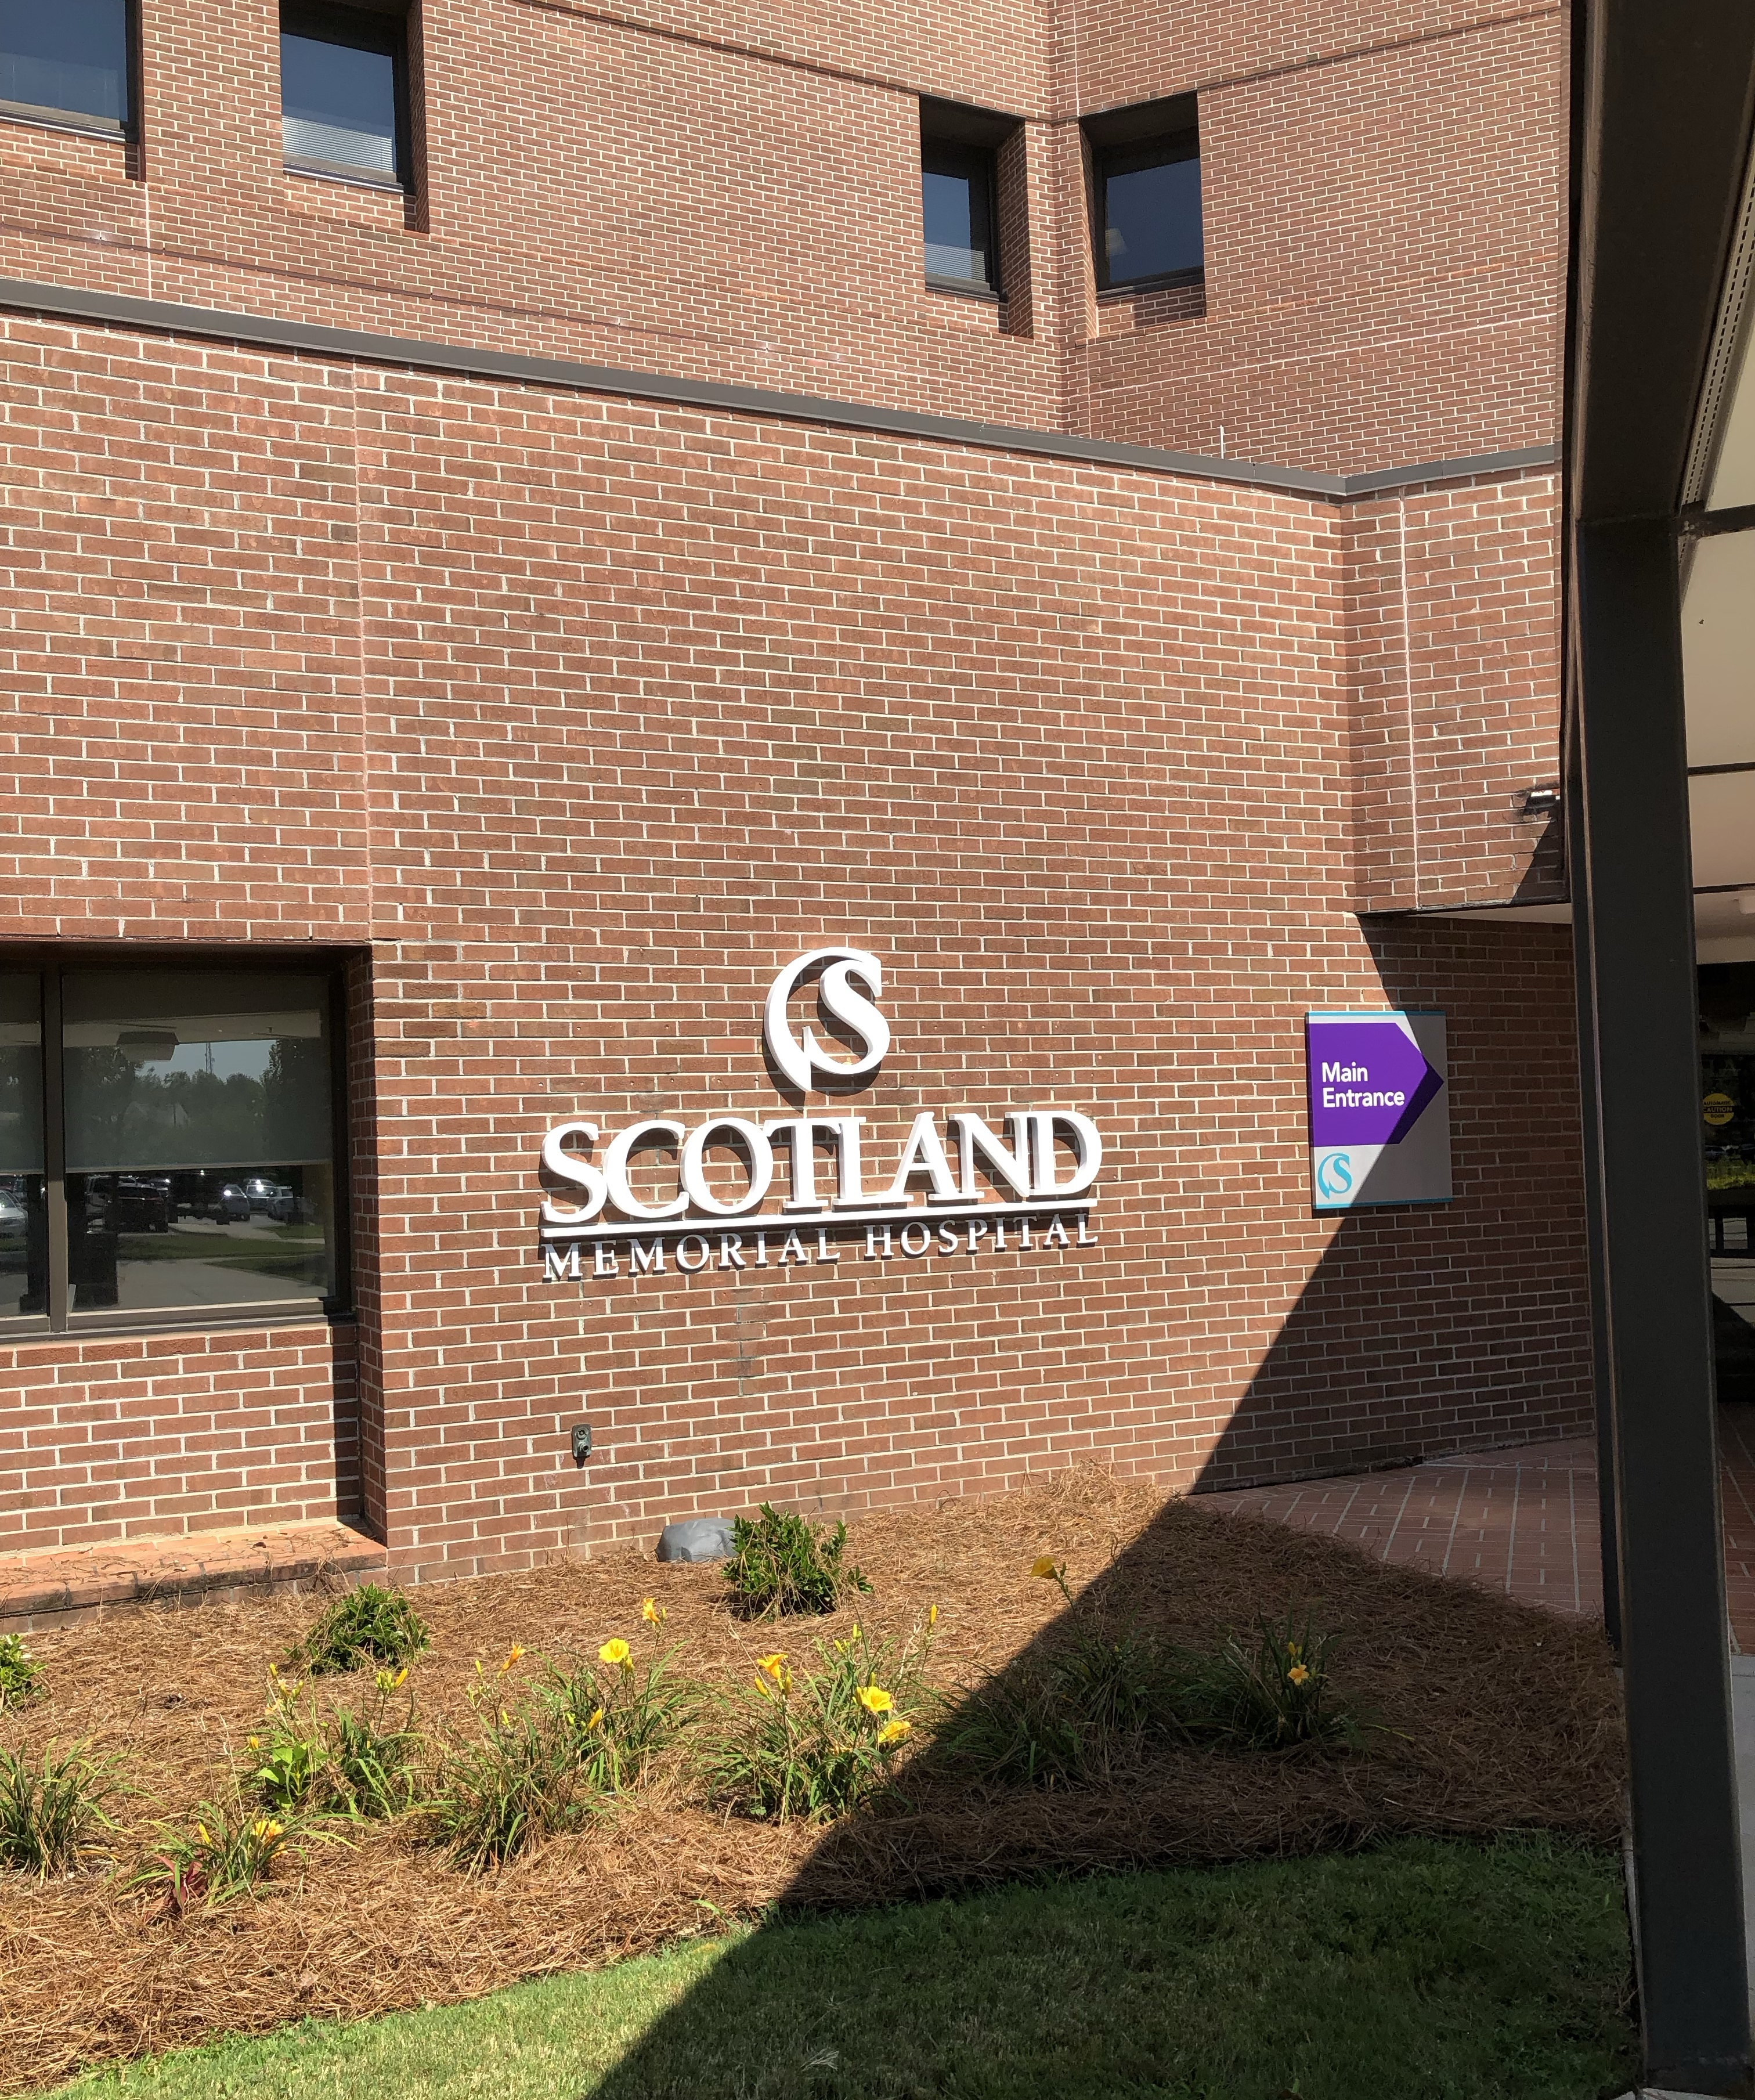 Scotland Memorial Hospital